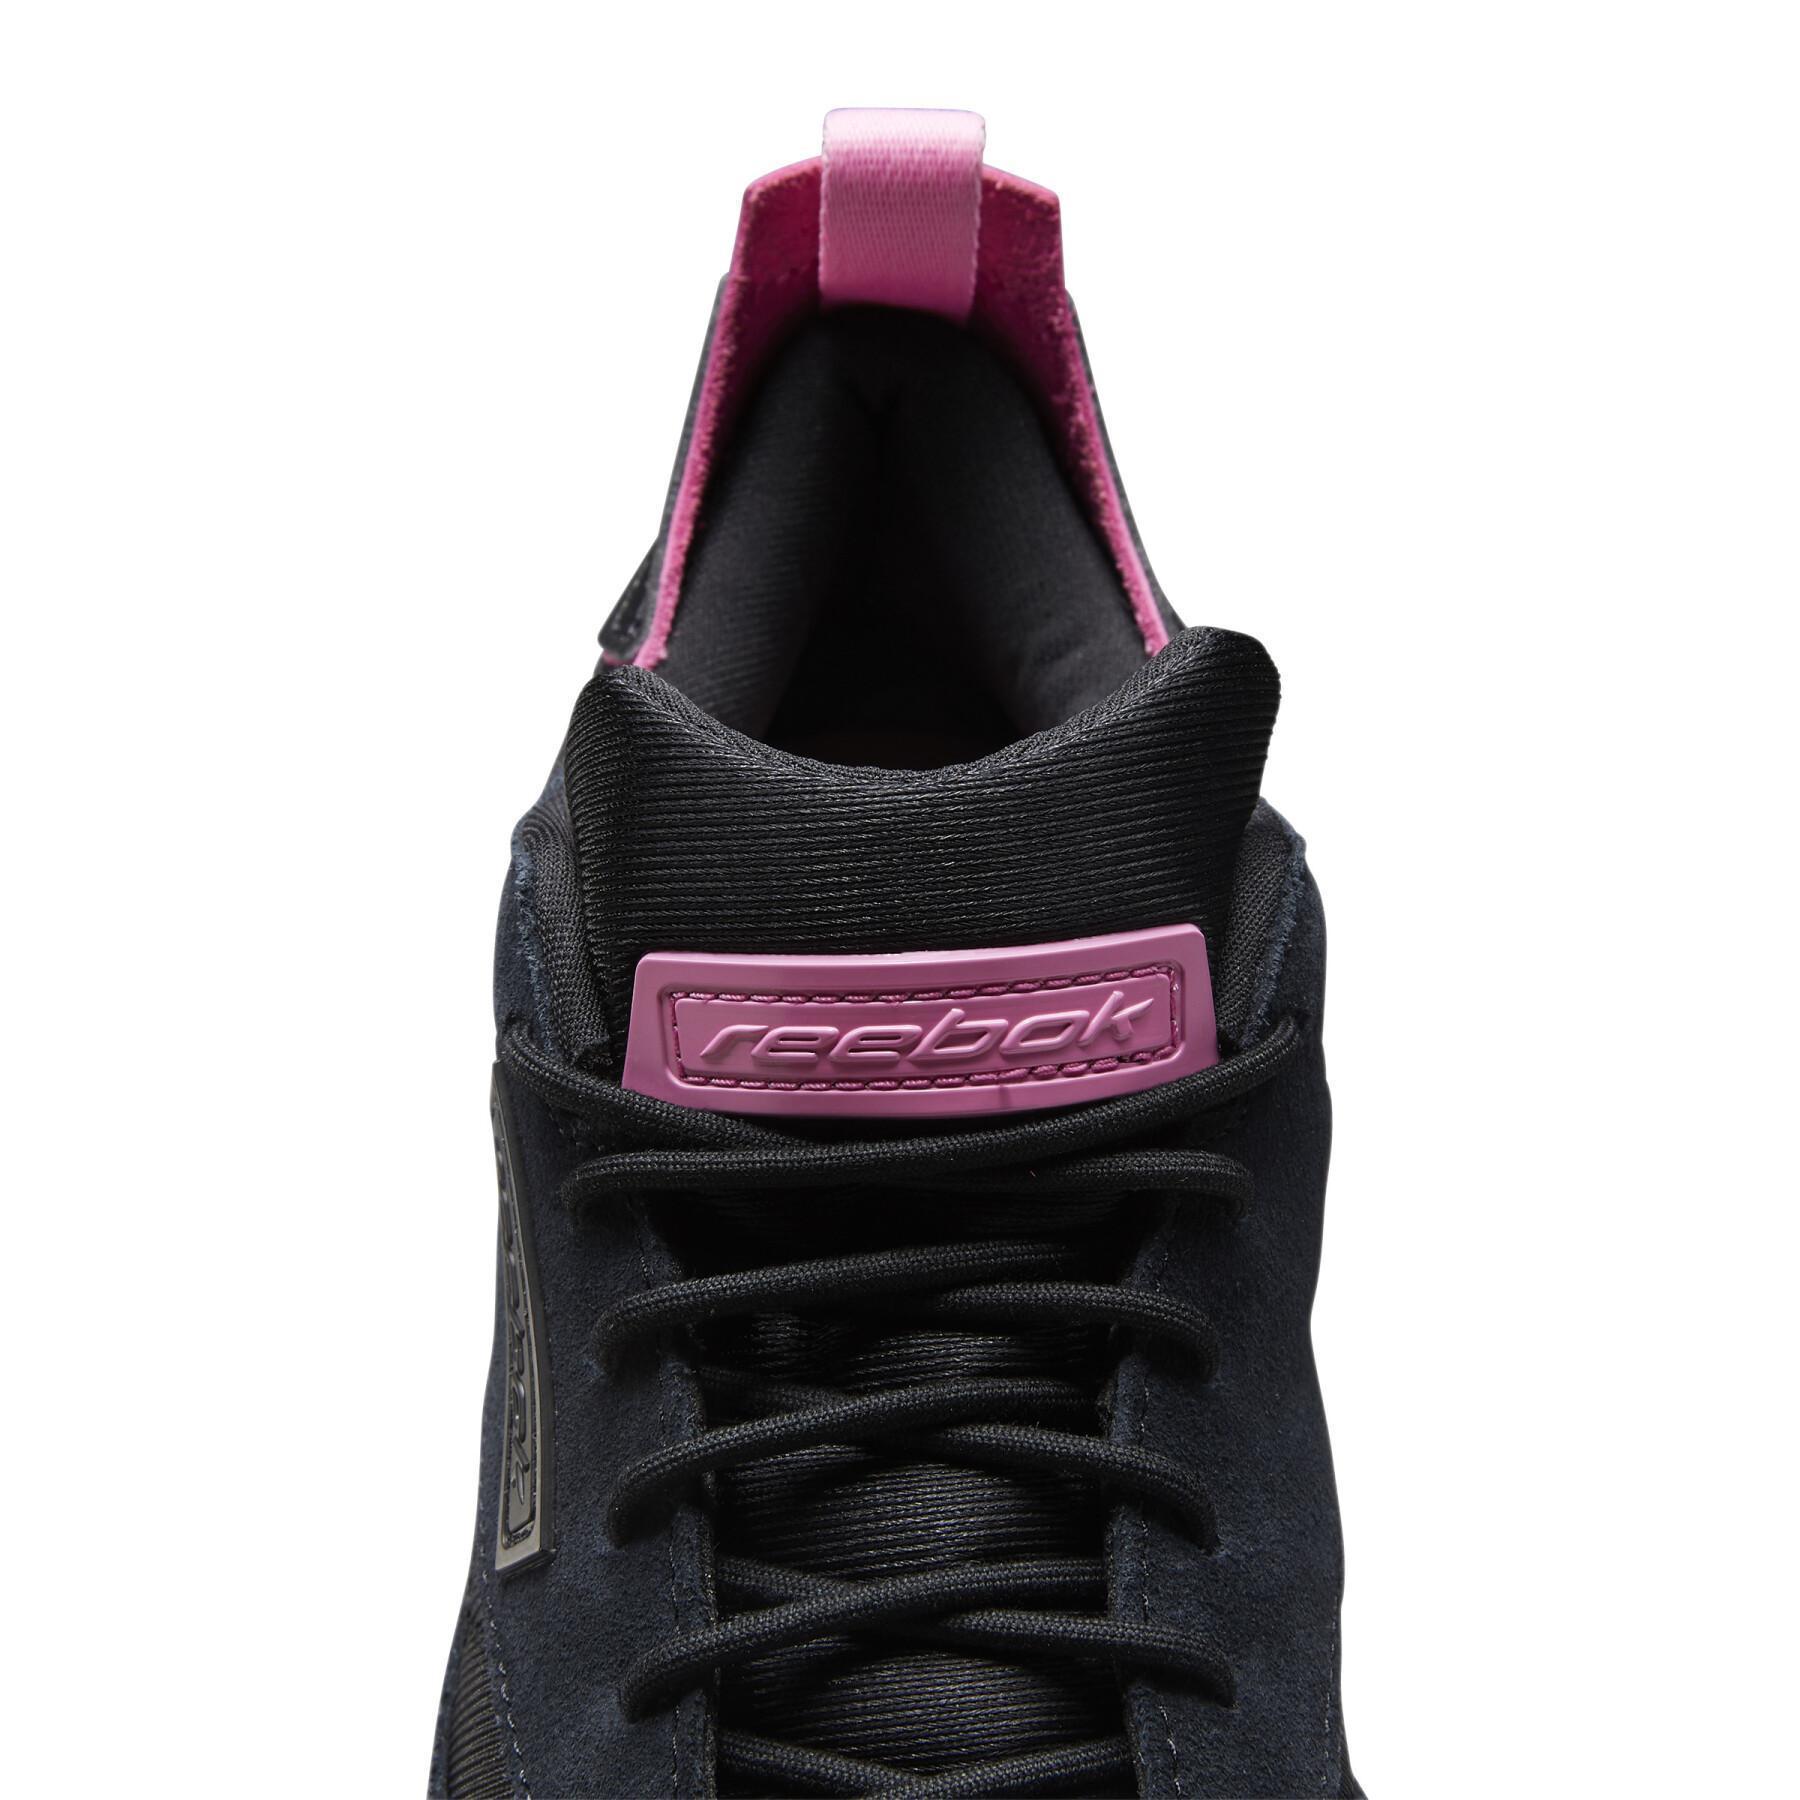 Reebok Leather Dux women's sneakers